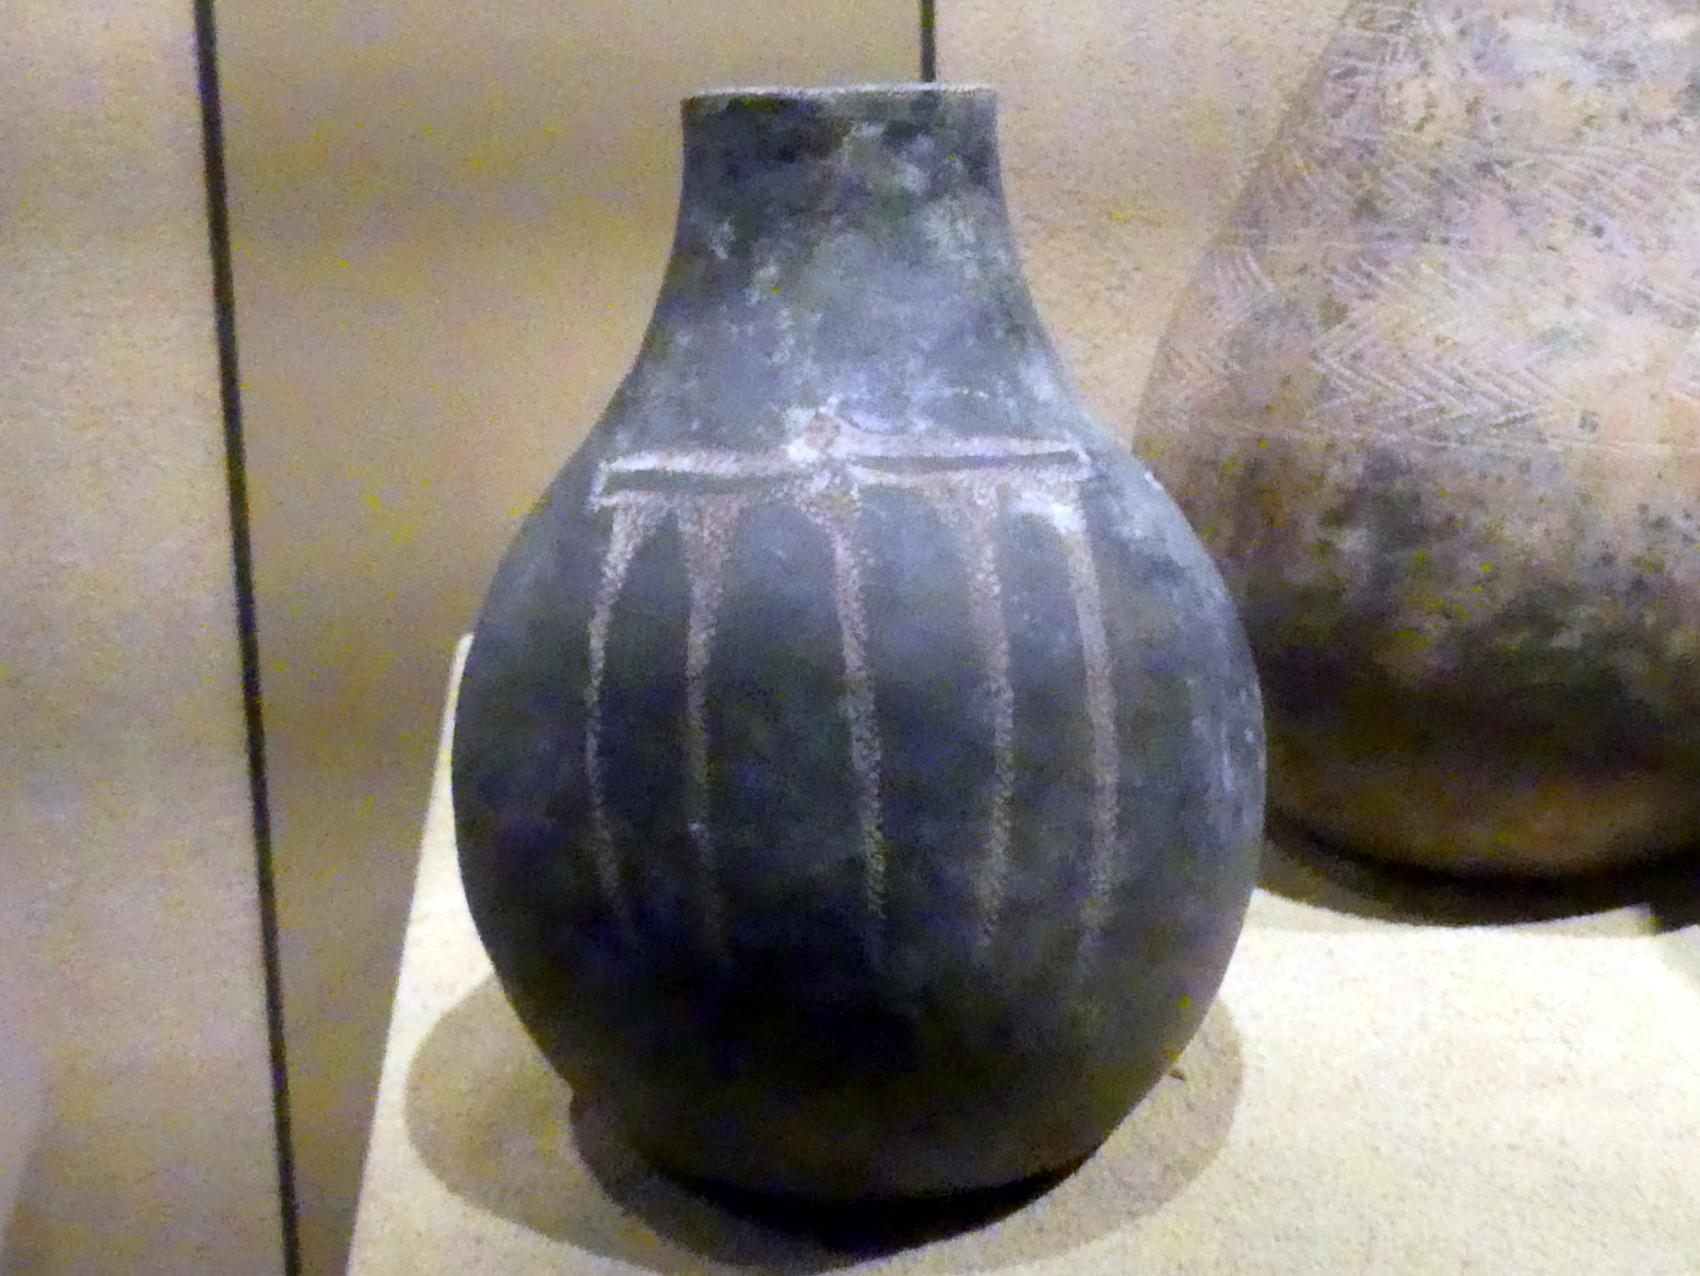 Polierte kugelförmige Flasche mit eingestochenem Ornament, Meroitische Zeit, 200 v. Chr. - 500 n. Chr., 1 - 100, Bild 1/2